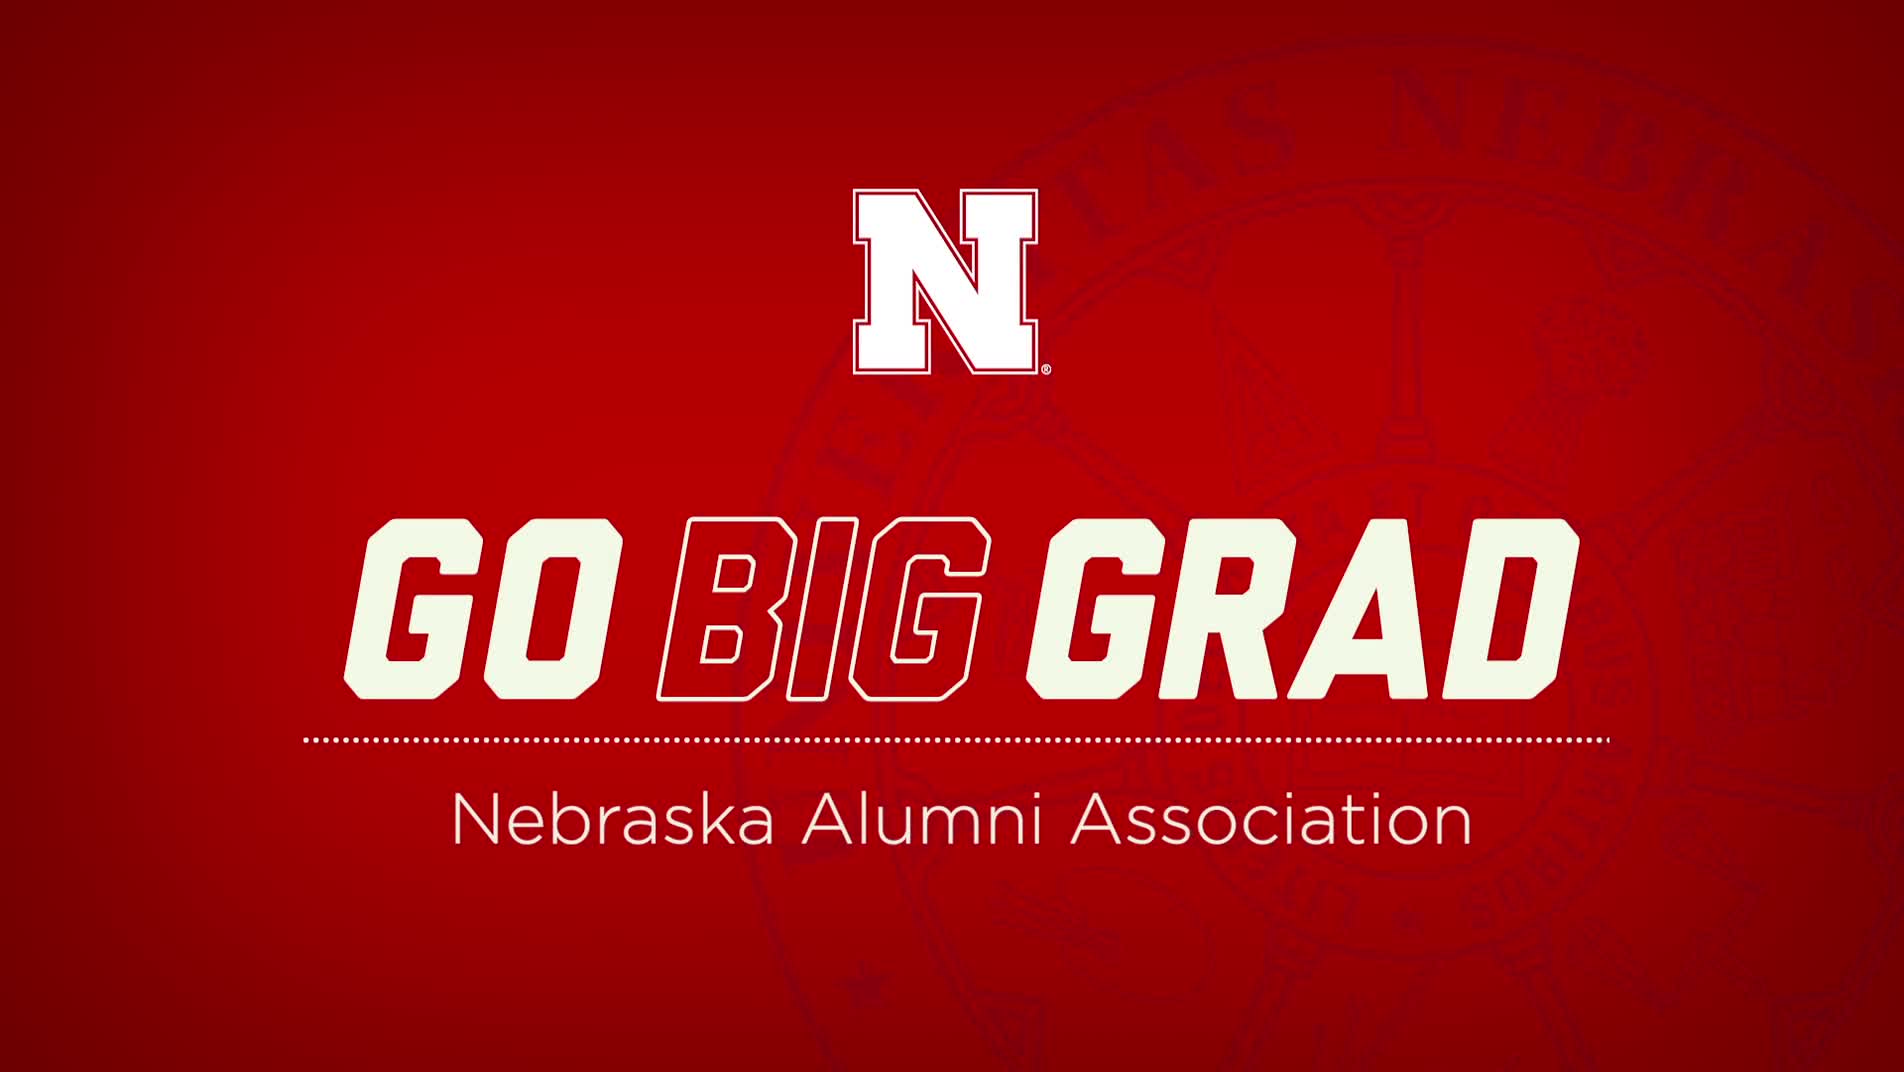 Go Big Grad | Nebraska Alumni Association | December 2020